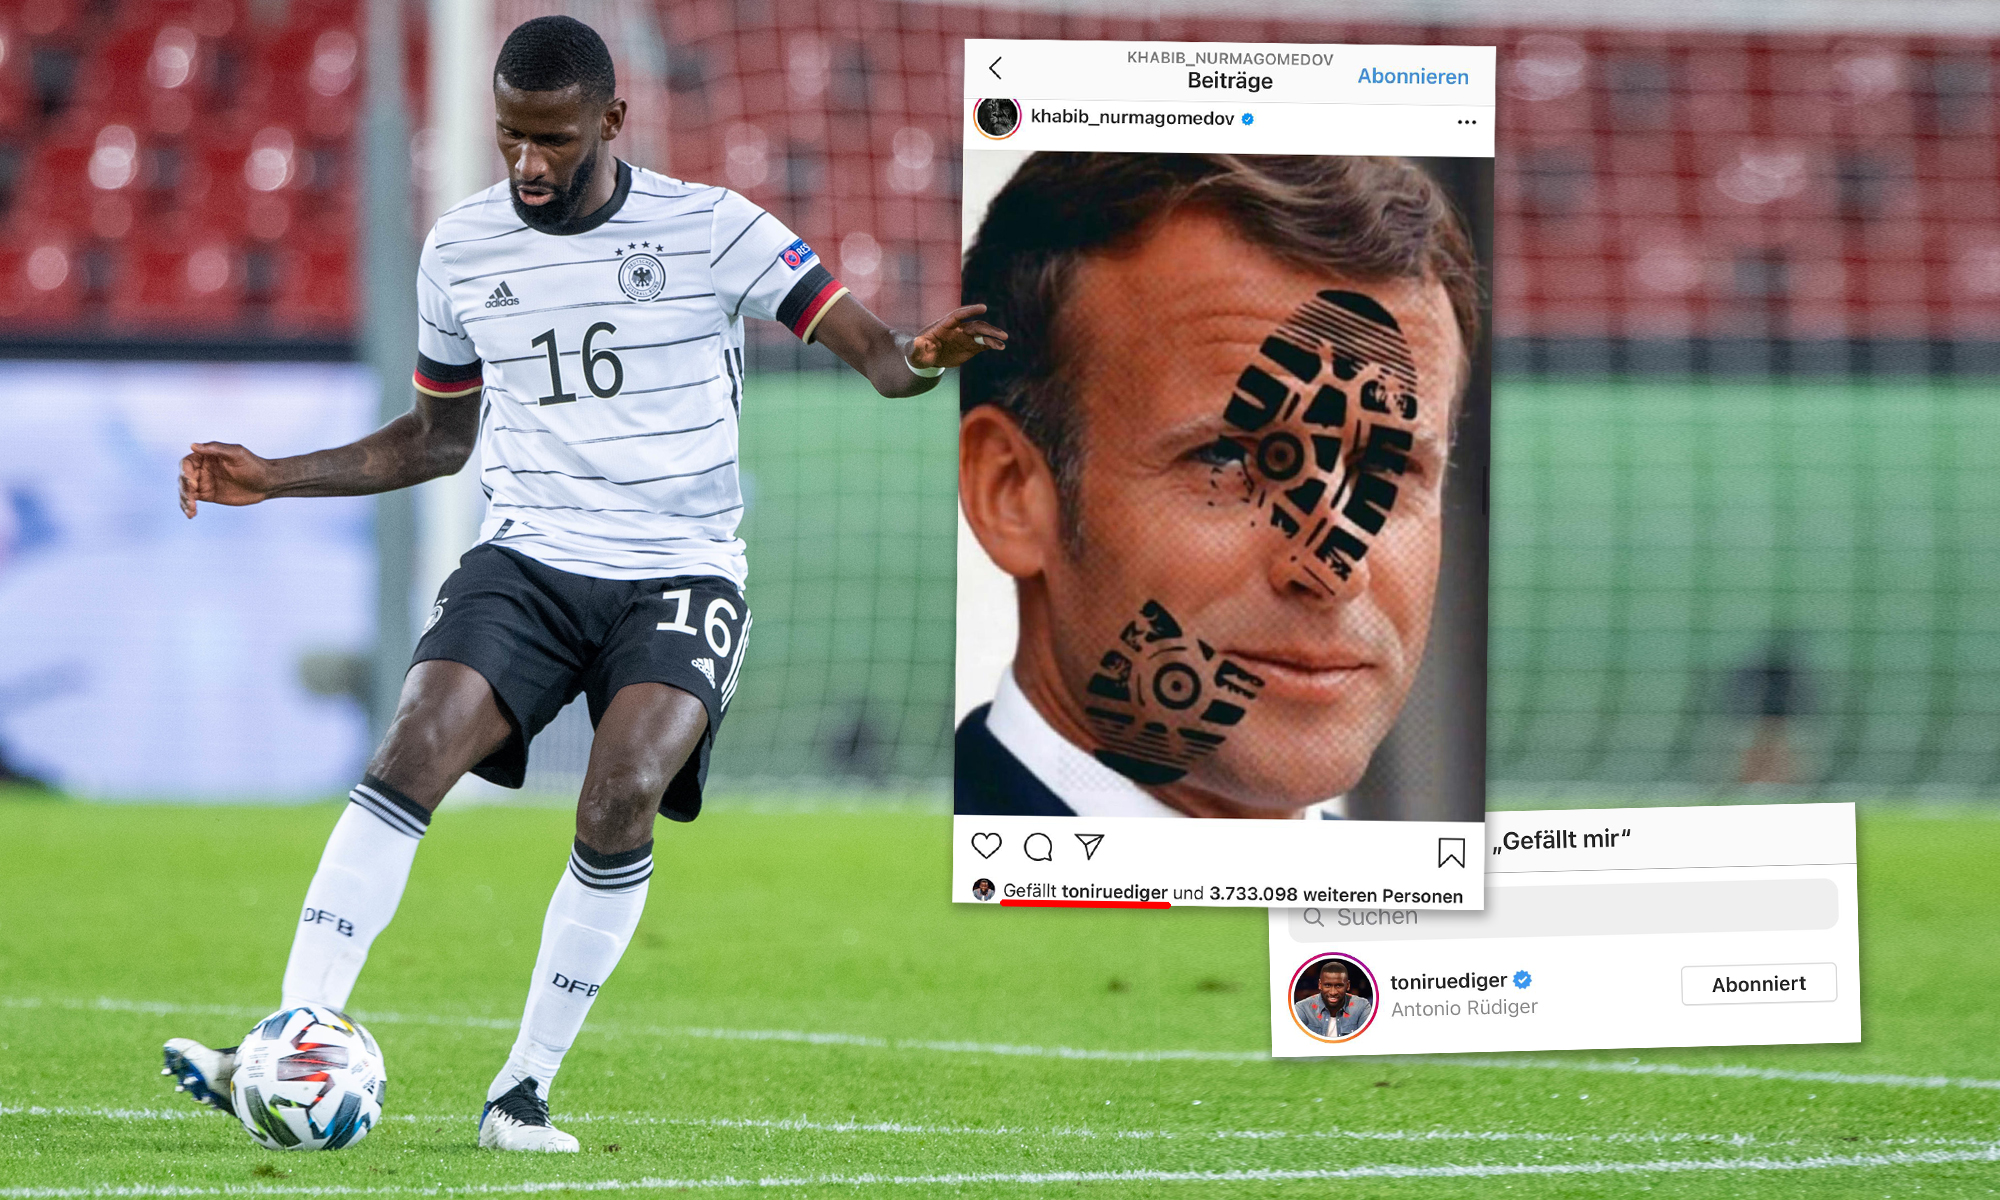 Fußball-Nationalspieler Antonio Rüdiger „gefällt“ islamistischer Anti-Macron-Eintrag